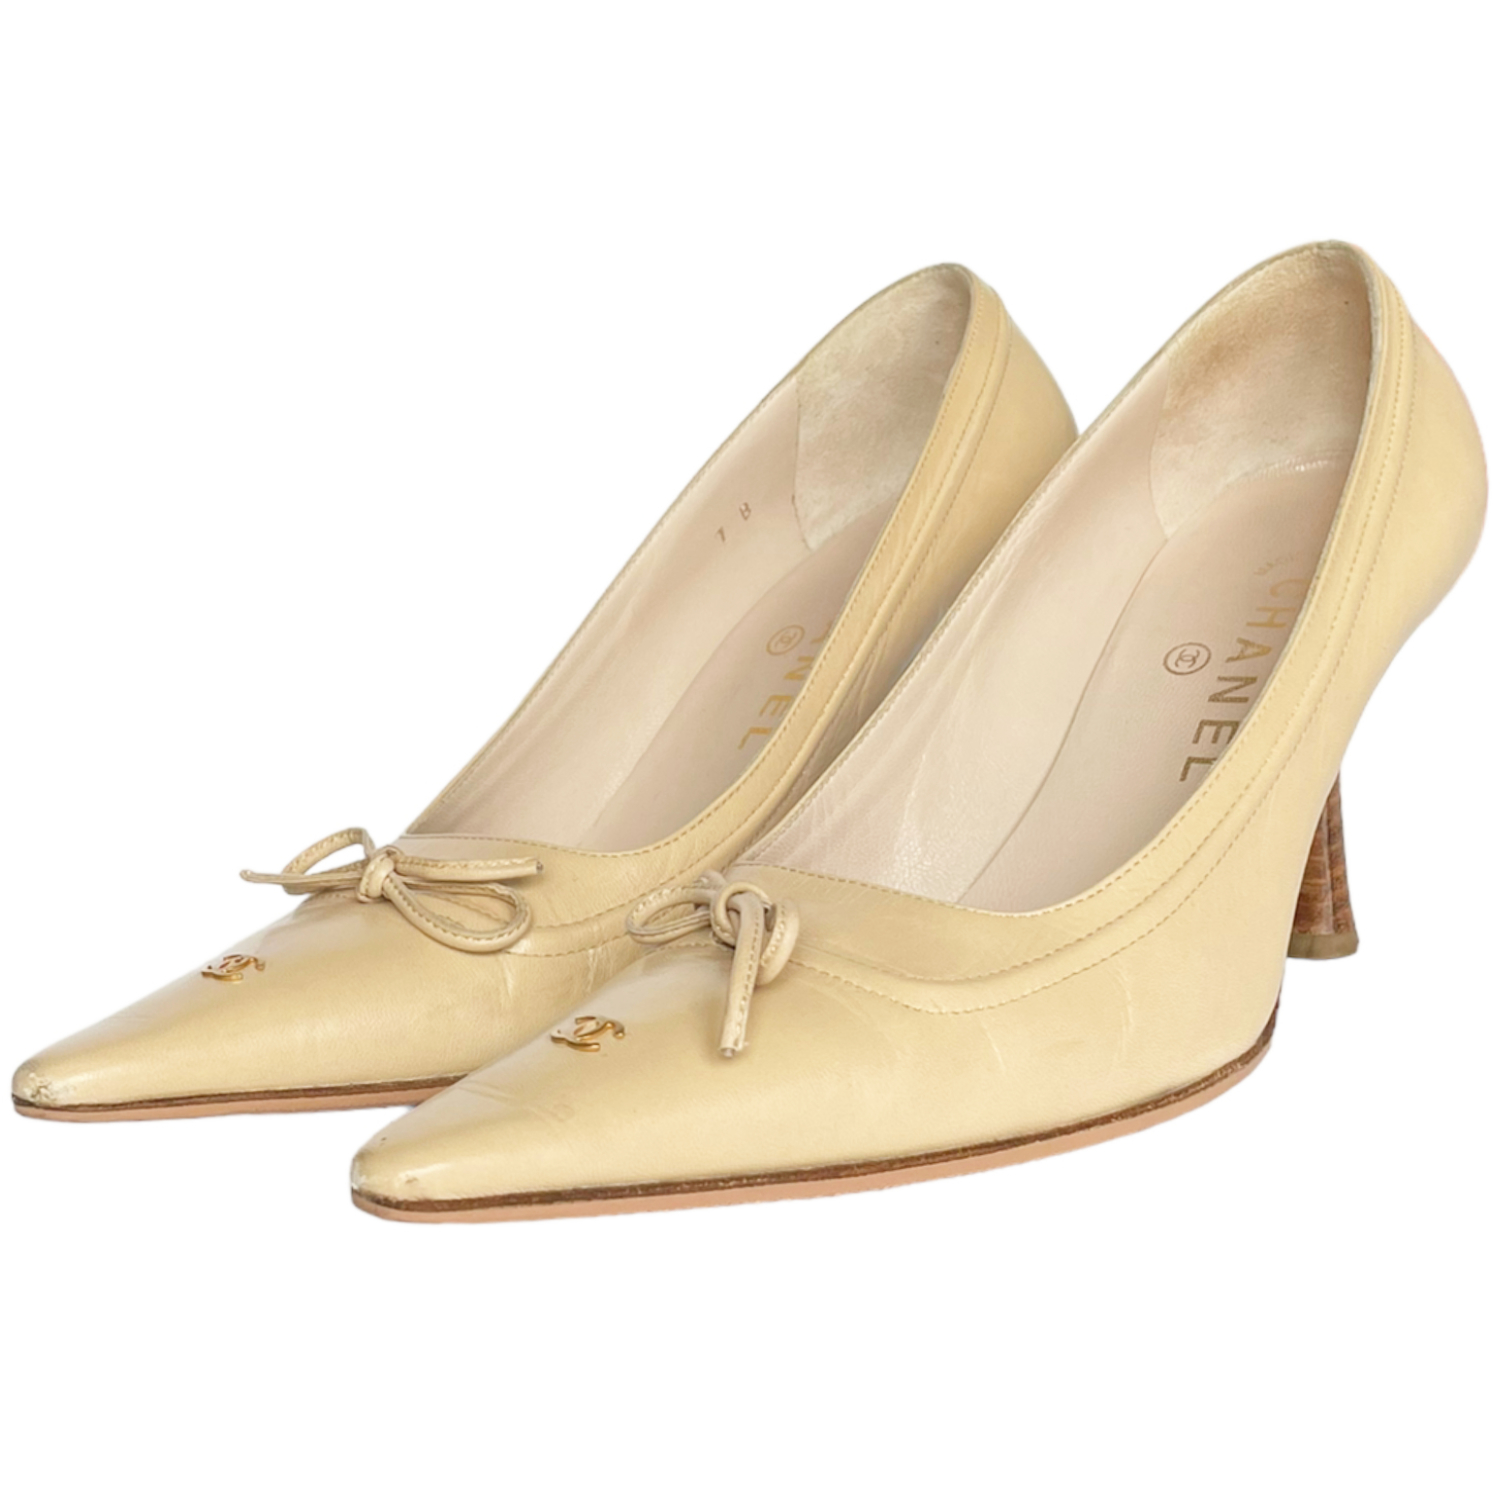 Vintage Chanel Bow Logo Heels in Beige / Gold UK 4 | NITRYL